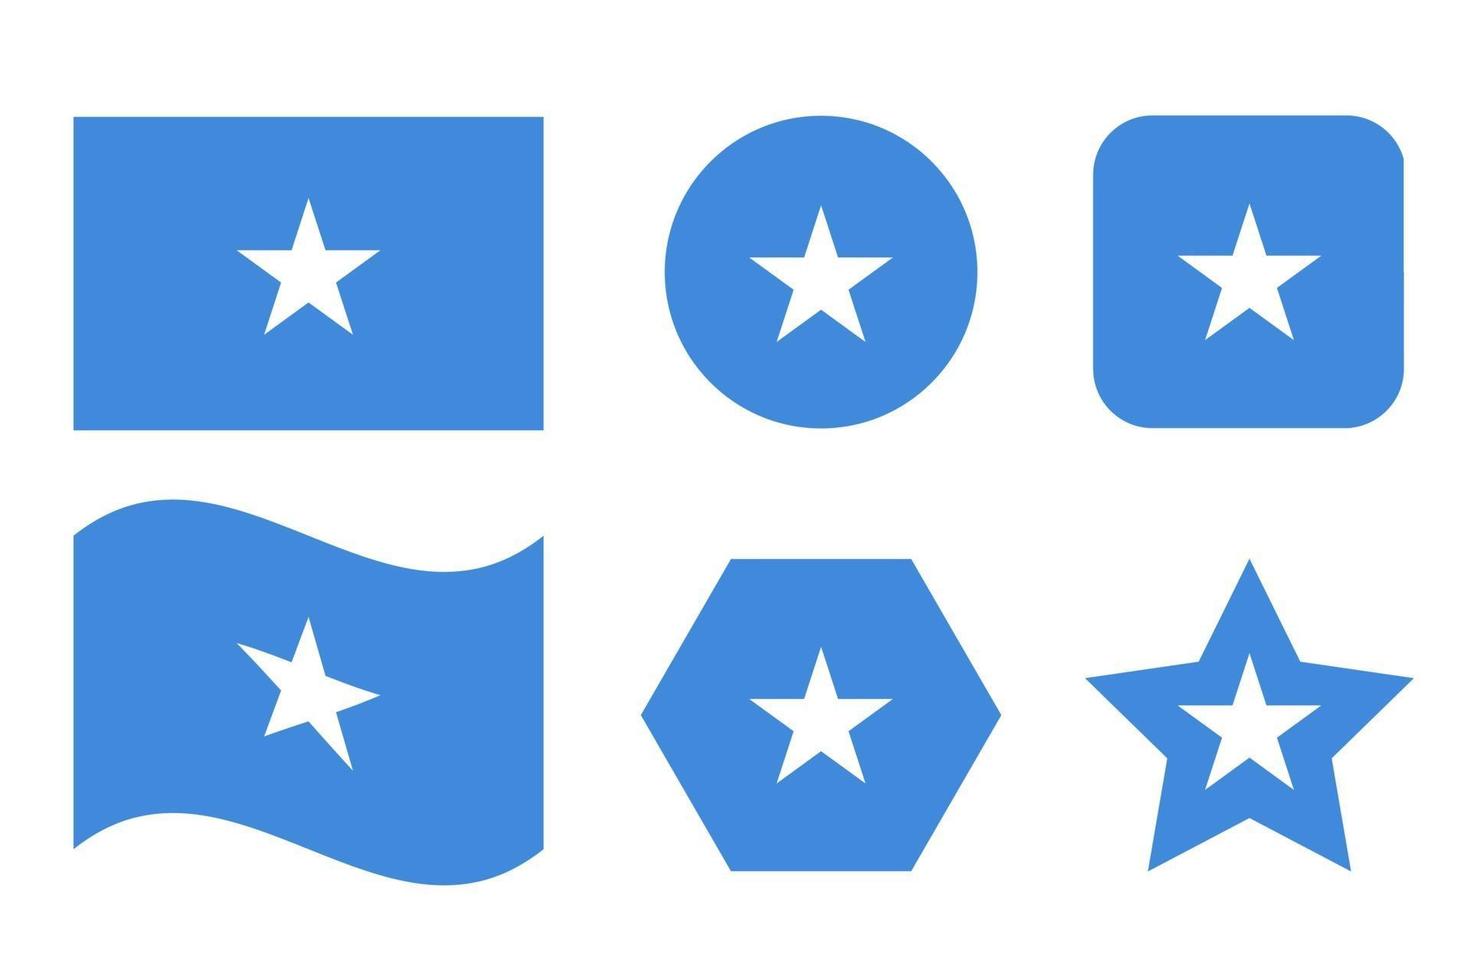 Somalia-Flagge einfache Illustration für Unabhängigkeitstag oder Wahl vektor